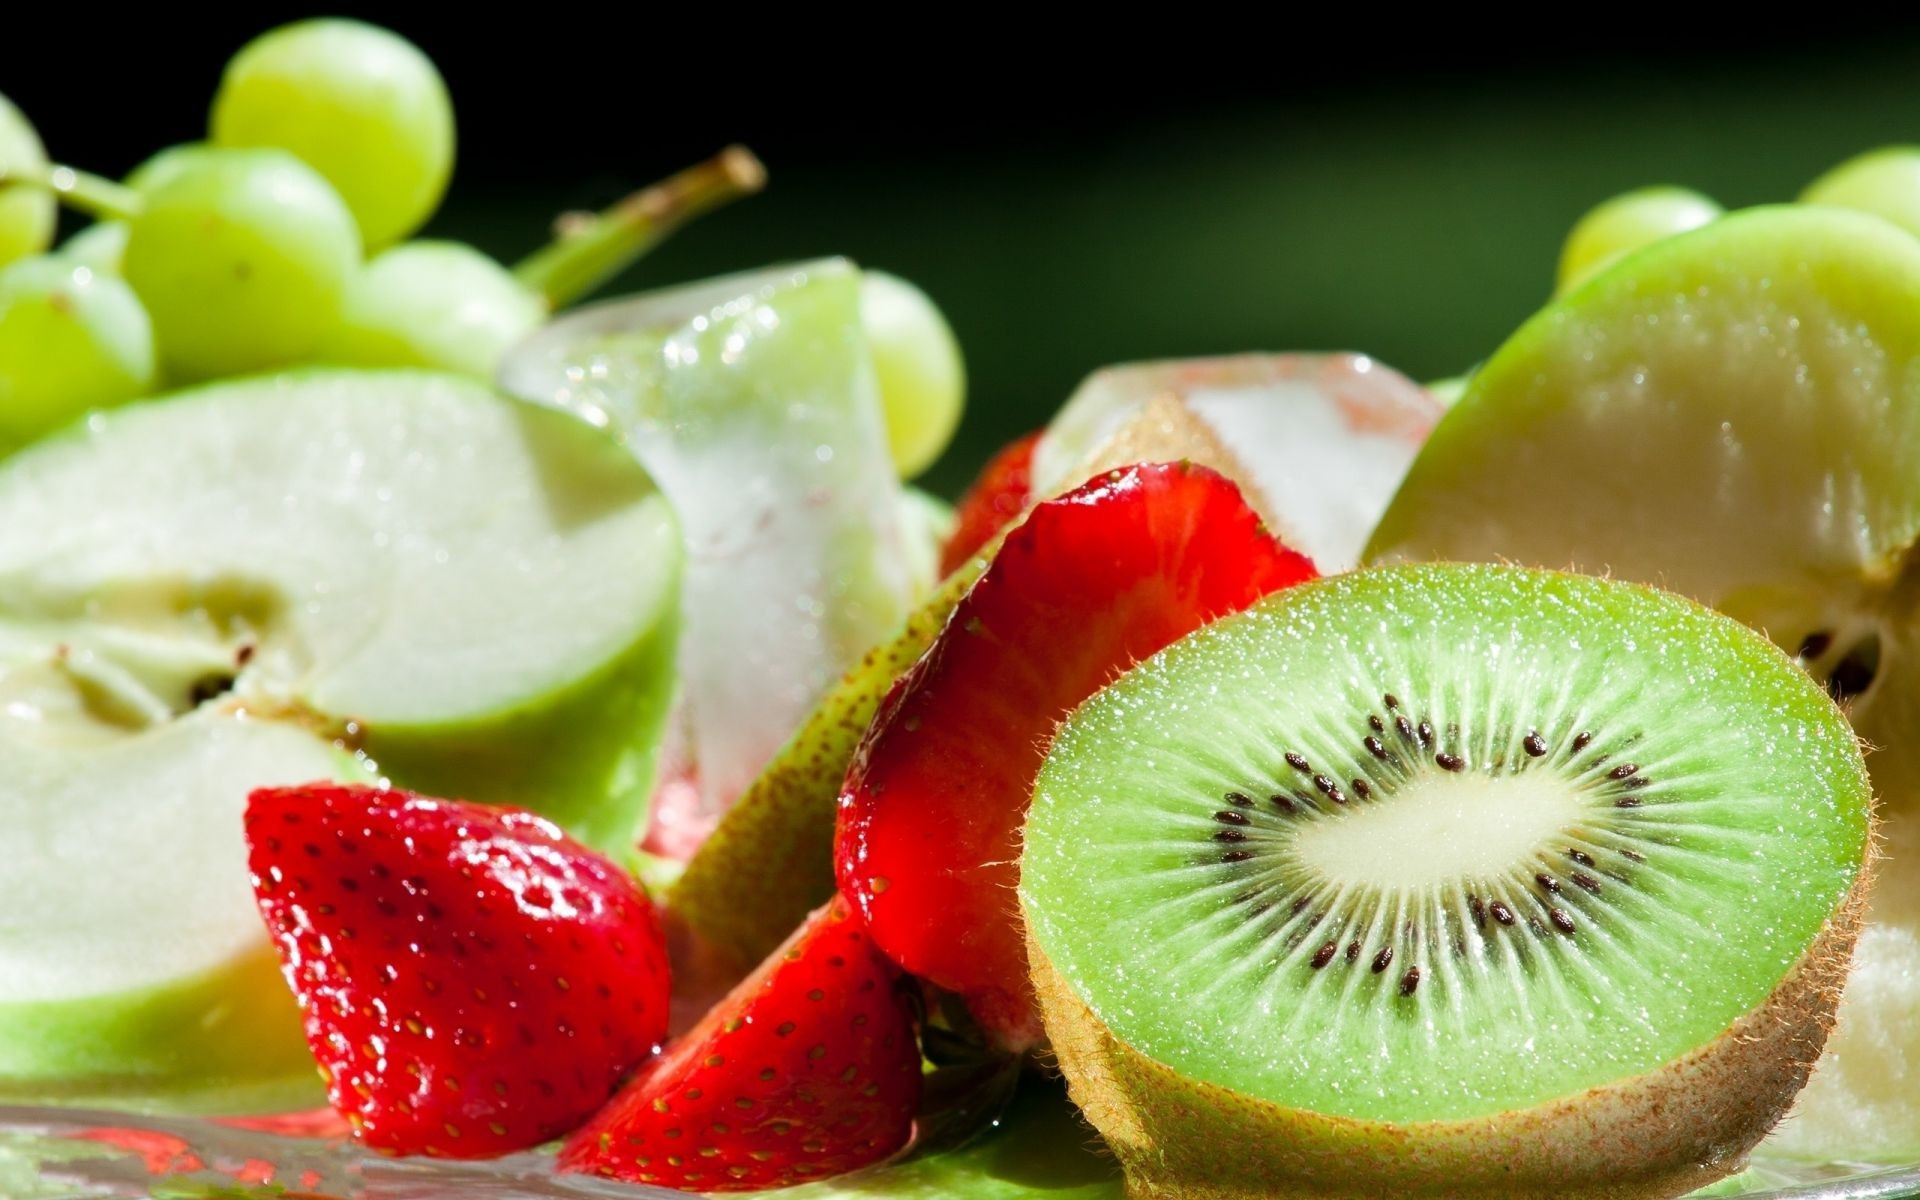 ягоды фрукты еда сочные киви сладкий здоровья клубничный здоровый кондитерское изделие питание тропический вкусные ягодка диета витамин освежение лето свежесть сок